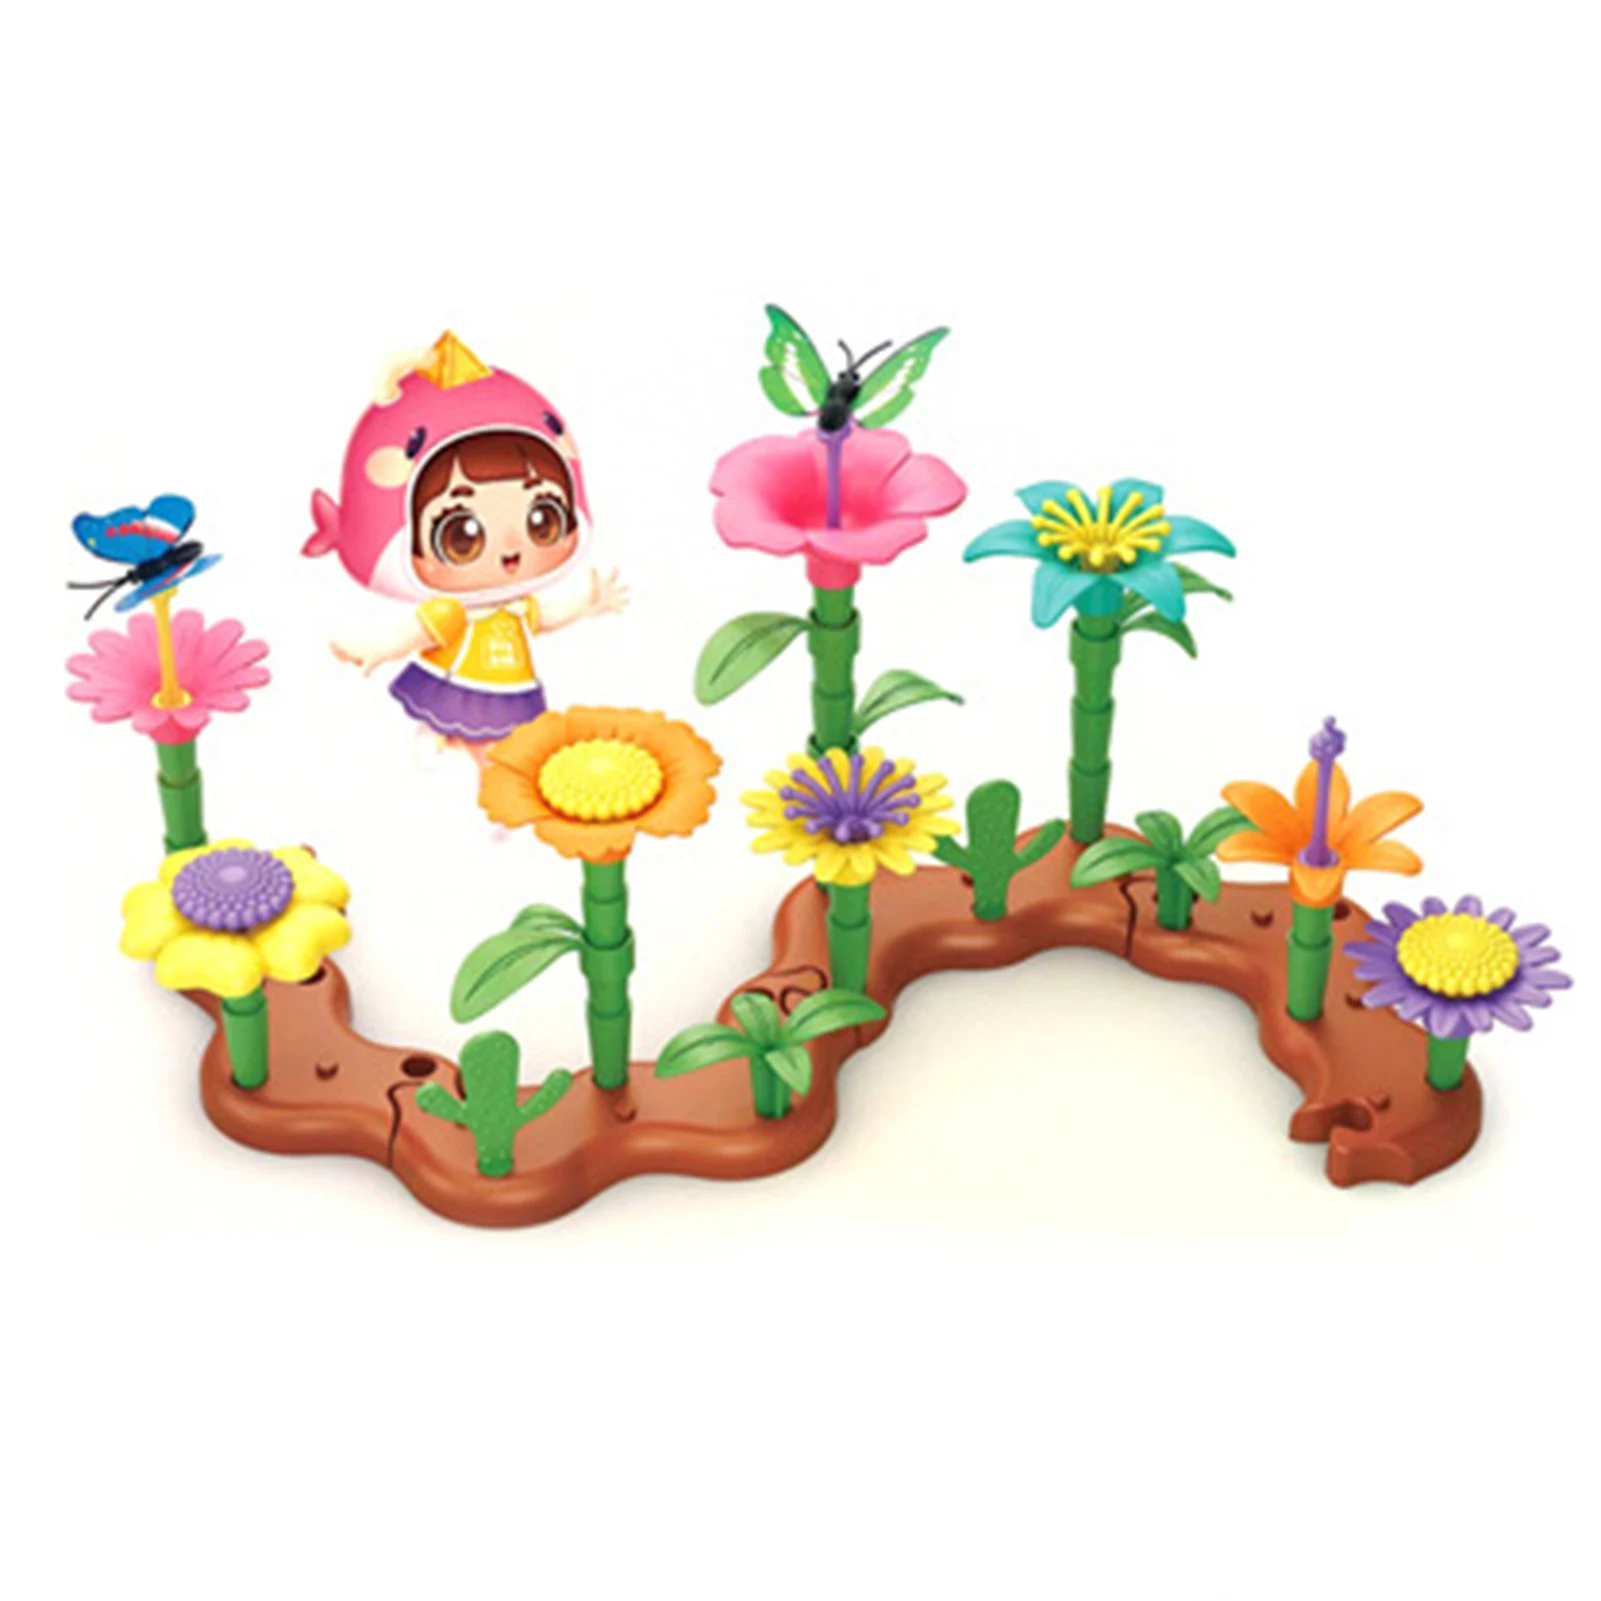 

Цветочный сад, строительные игрушки с бабочками, цветущие стебли, основы для девочек и мальчиков [От 3 до 6 лет]